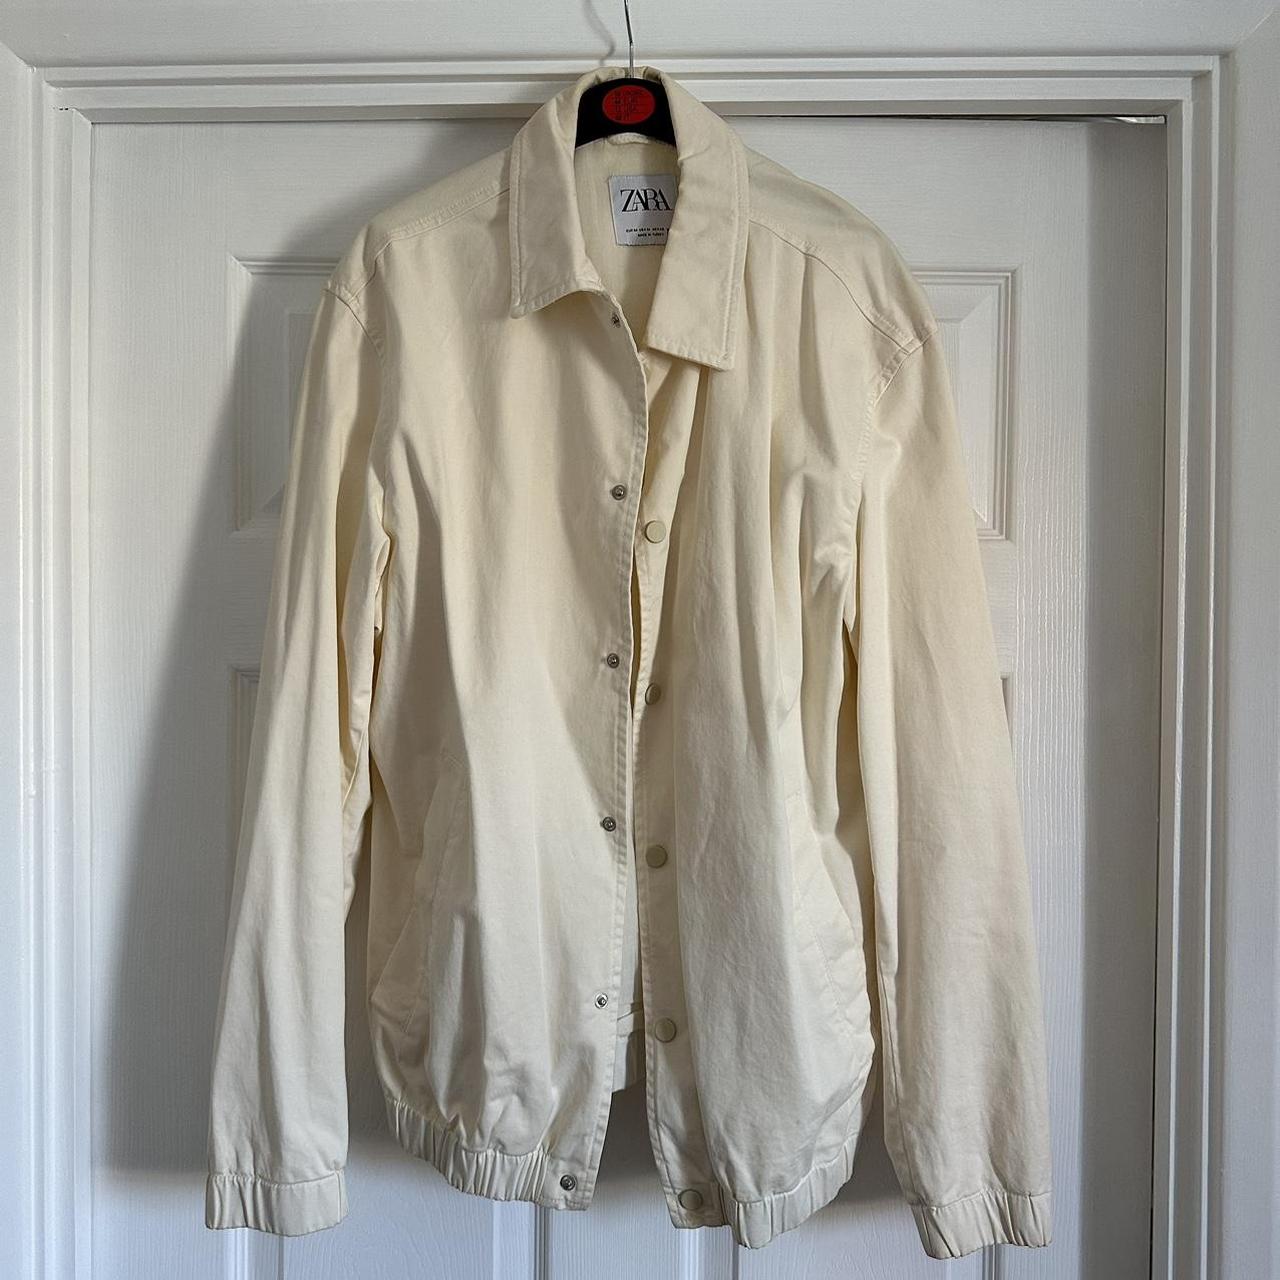 Zara Harrington Jacket | Cream / Off White | Men’s... - Depop